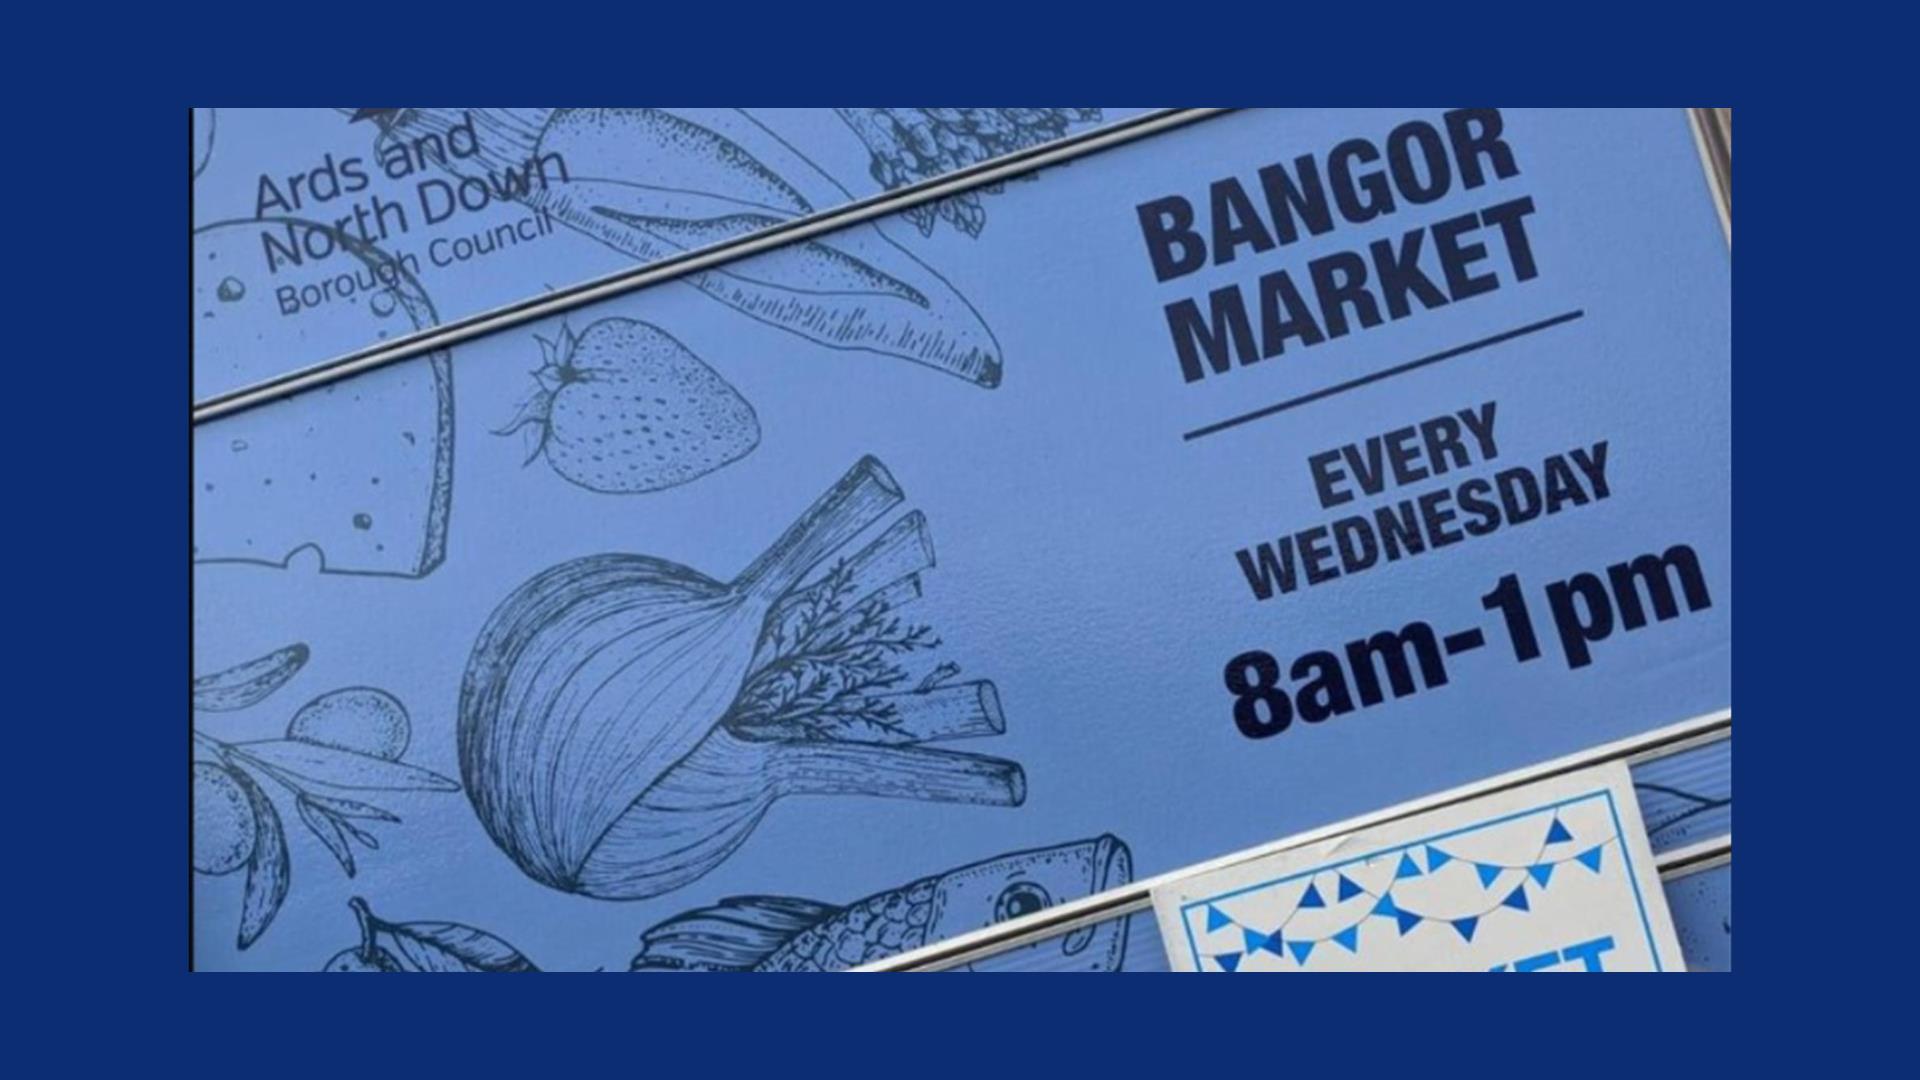 Bangor Market signage